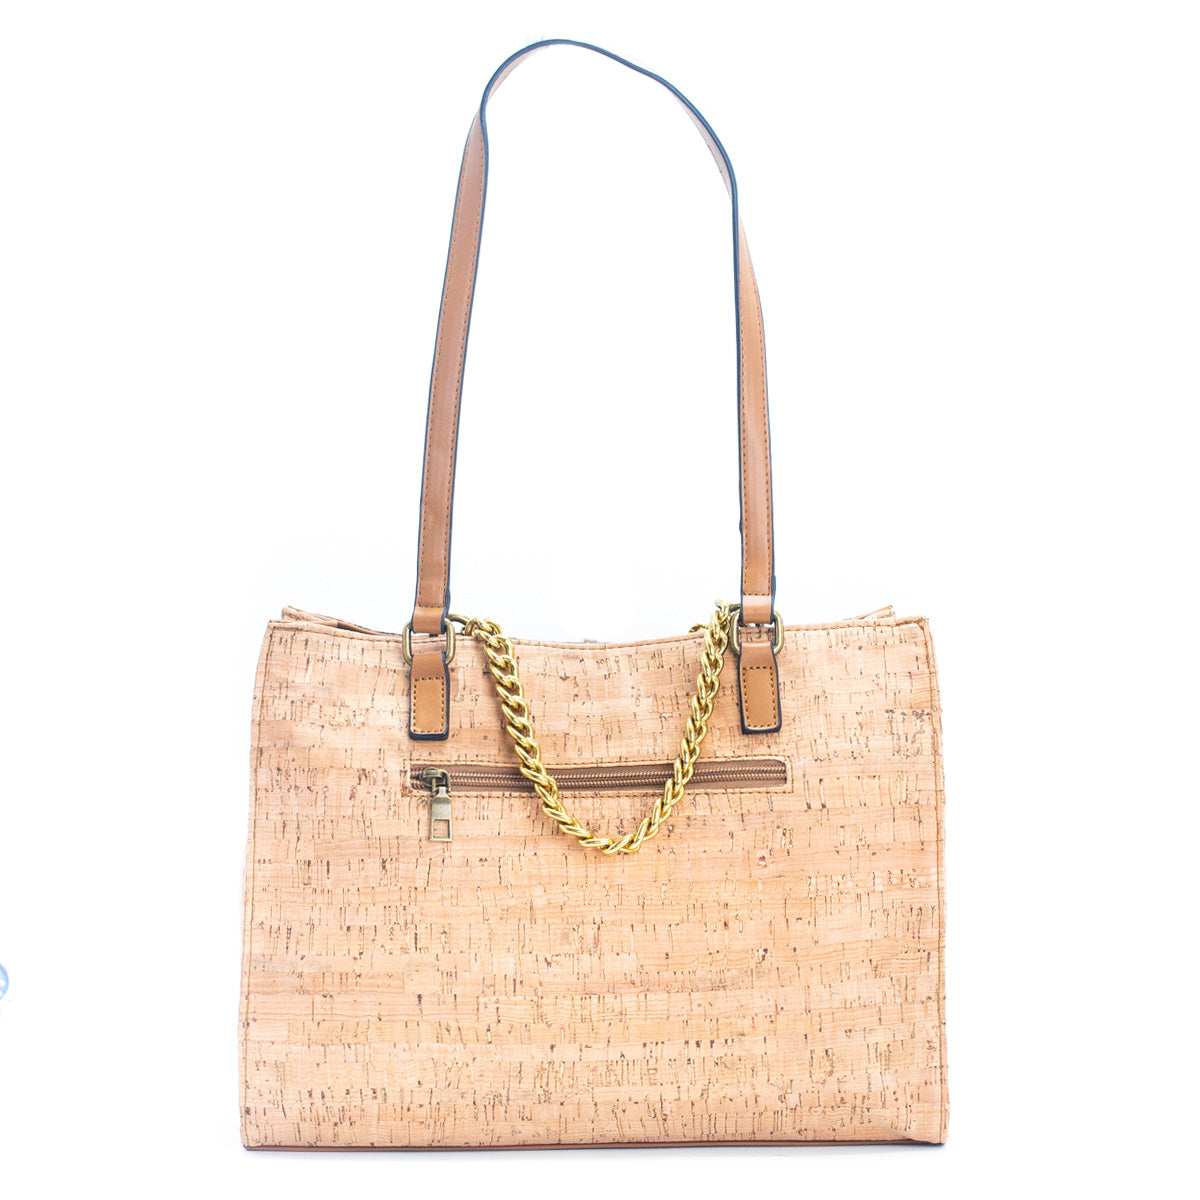 Buy Cork Shoulder Bag, Genuine Cork Bag Online in India - Etsy